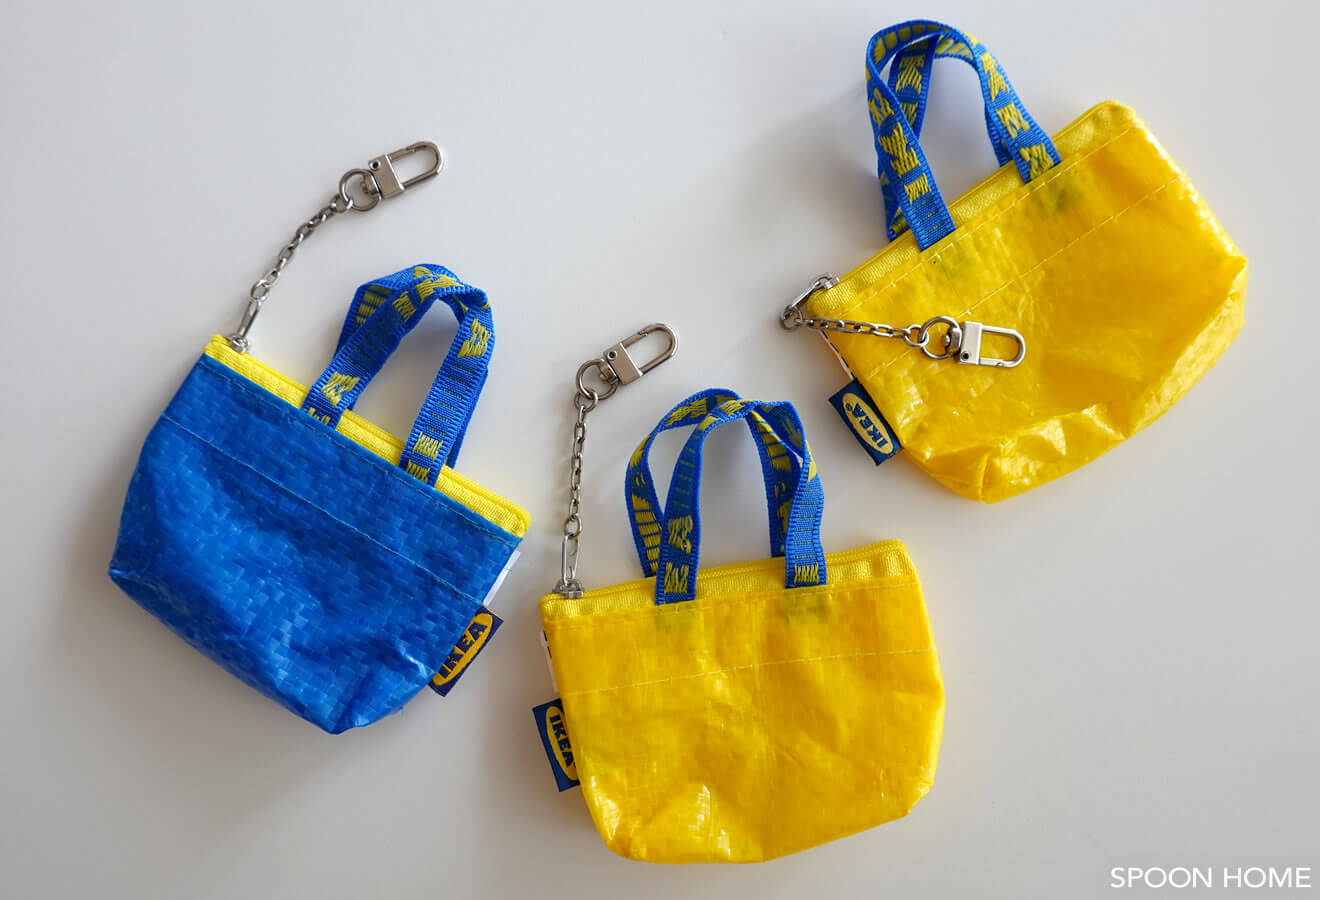 Ikeaのミニバッグ クノーリグバッグs の活用法 収納アイデアをブログでレポート